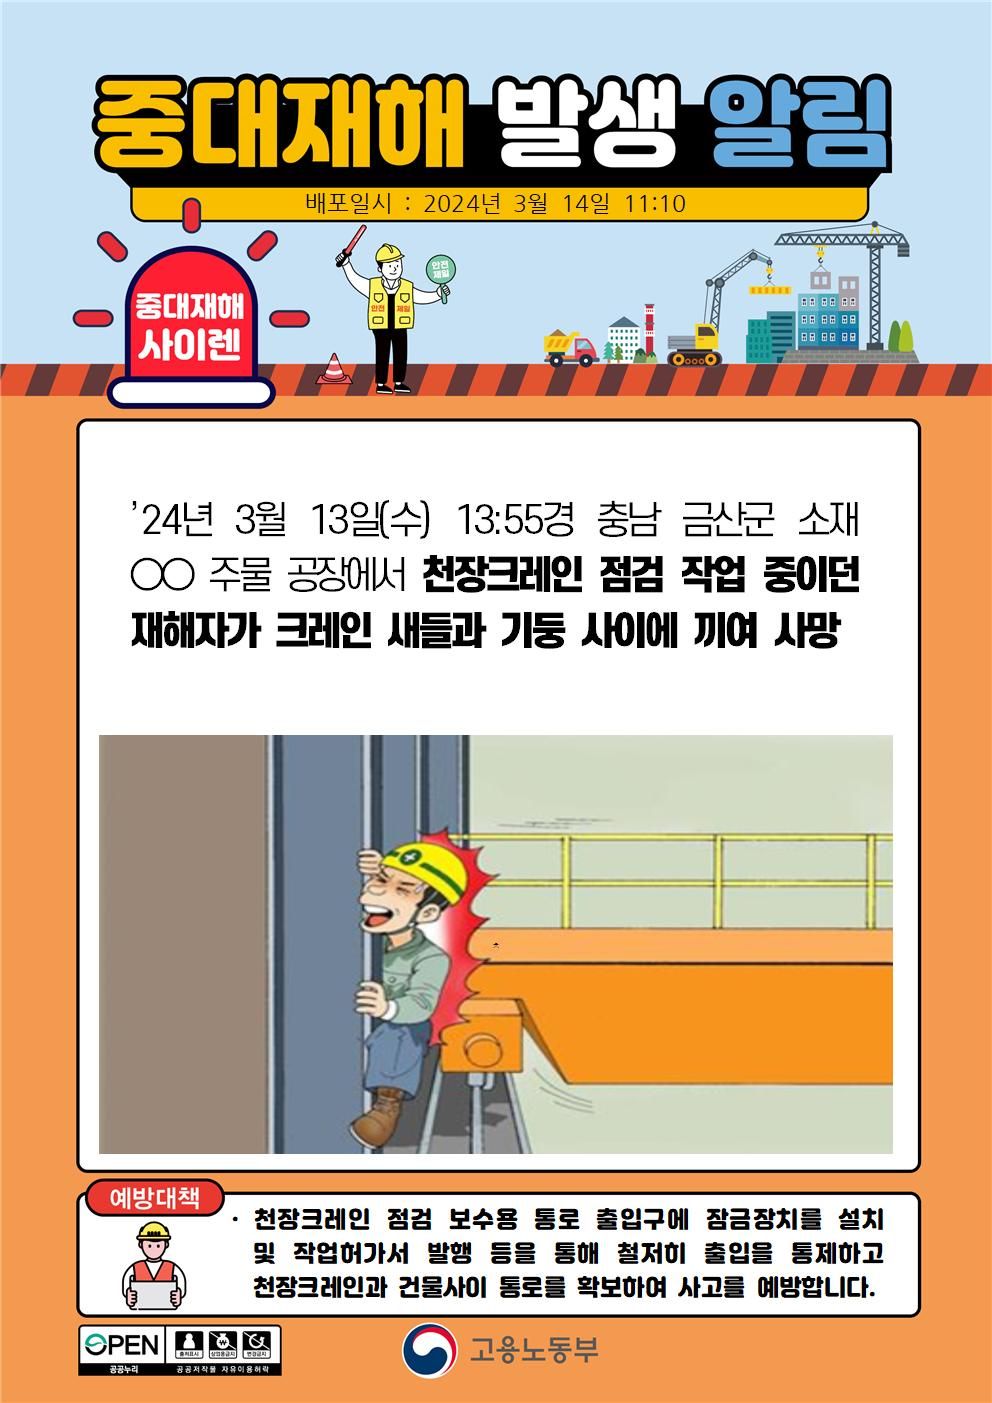 천장크레인 점검 작업 중 크레인 새들과 기둥사이에 끼임